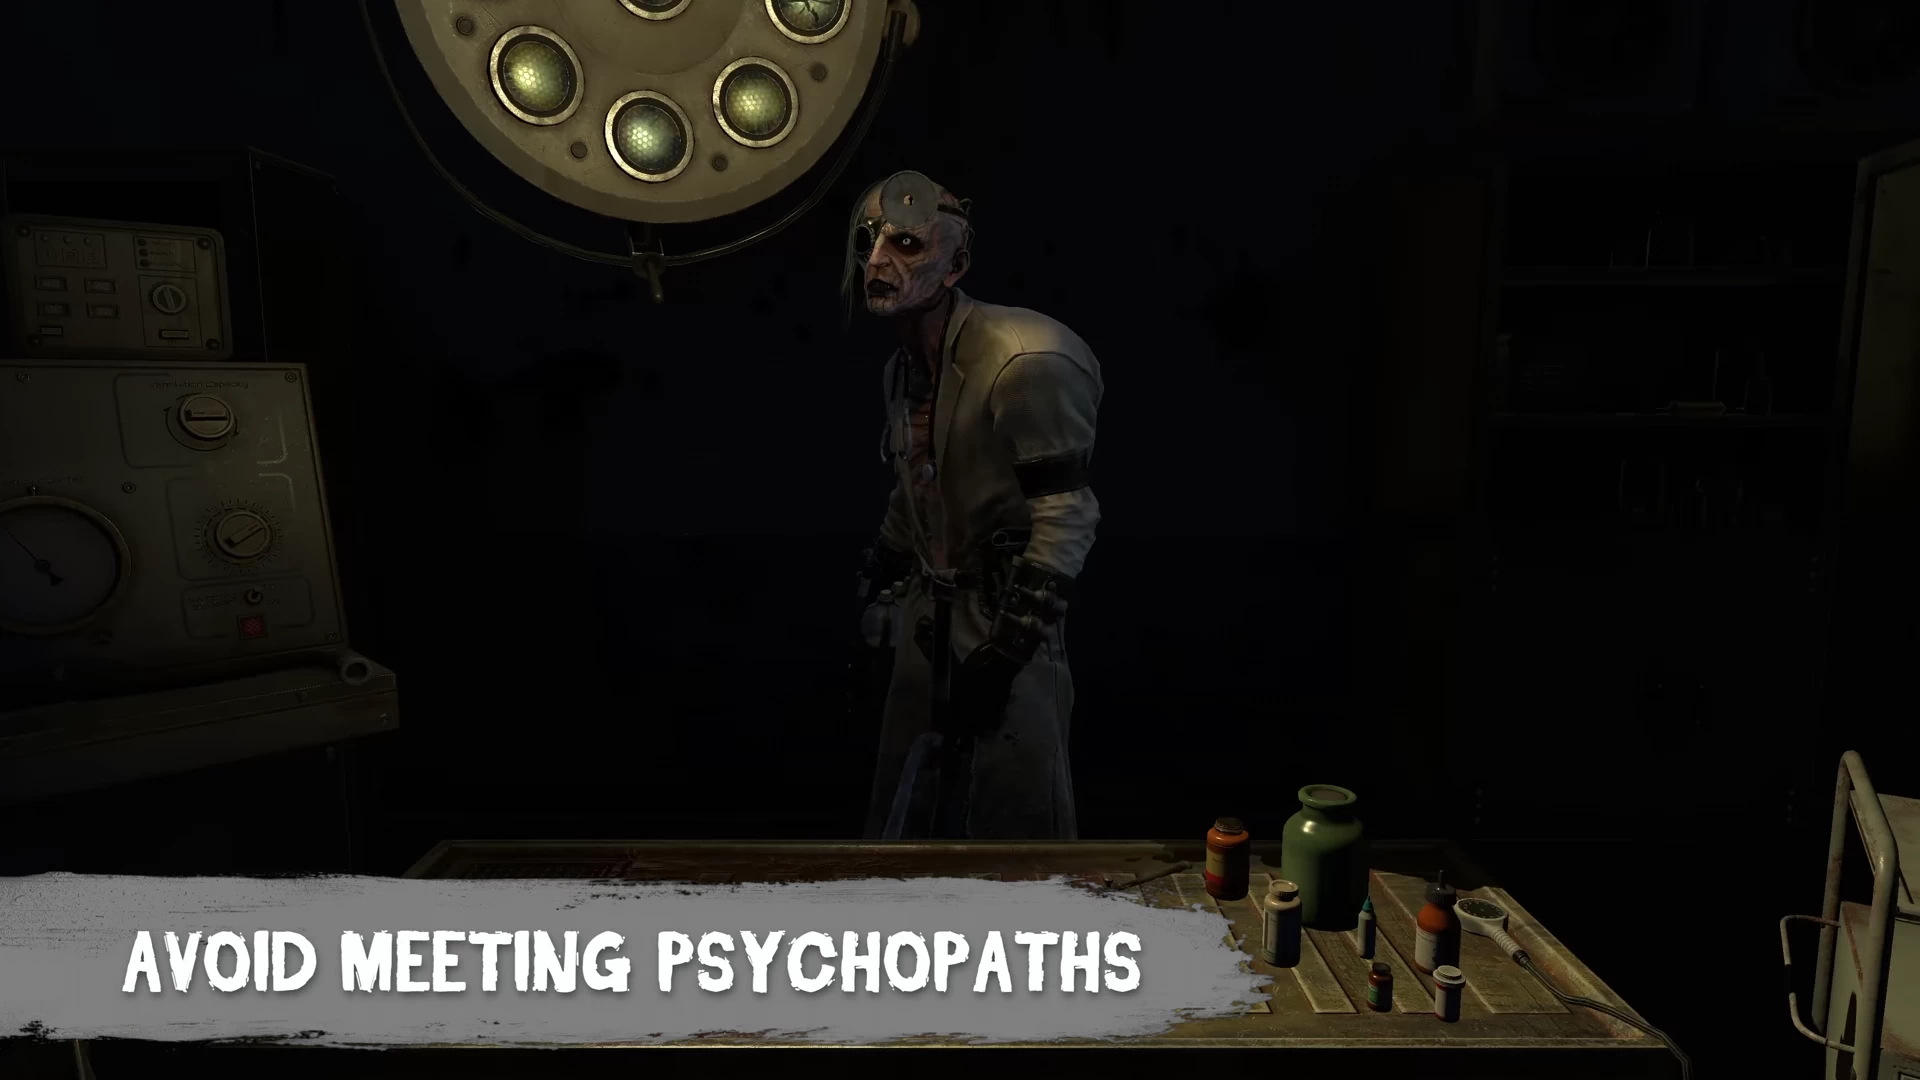 Dr. Psycho - Hospital Escape - Click Jogos